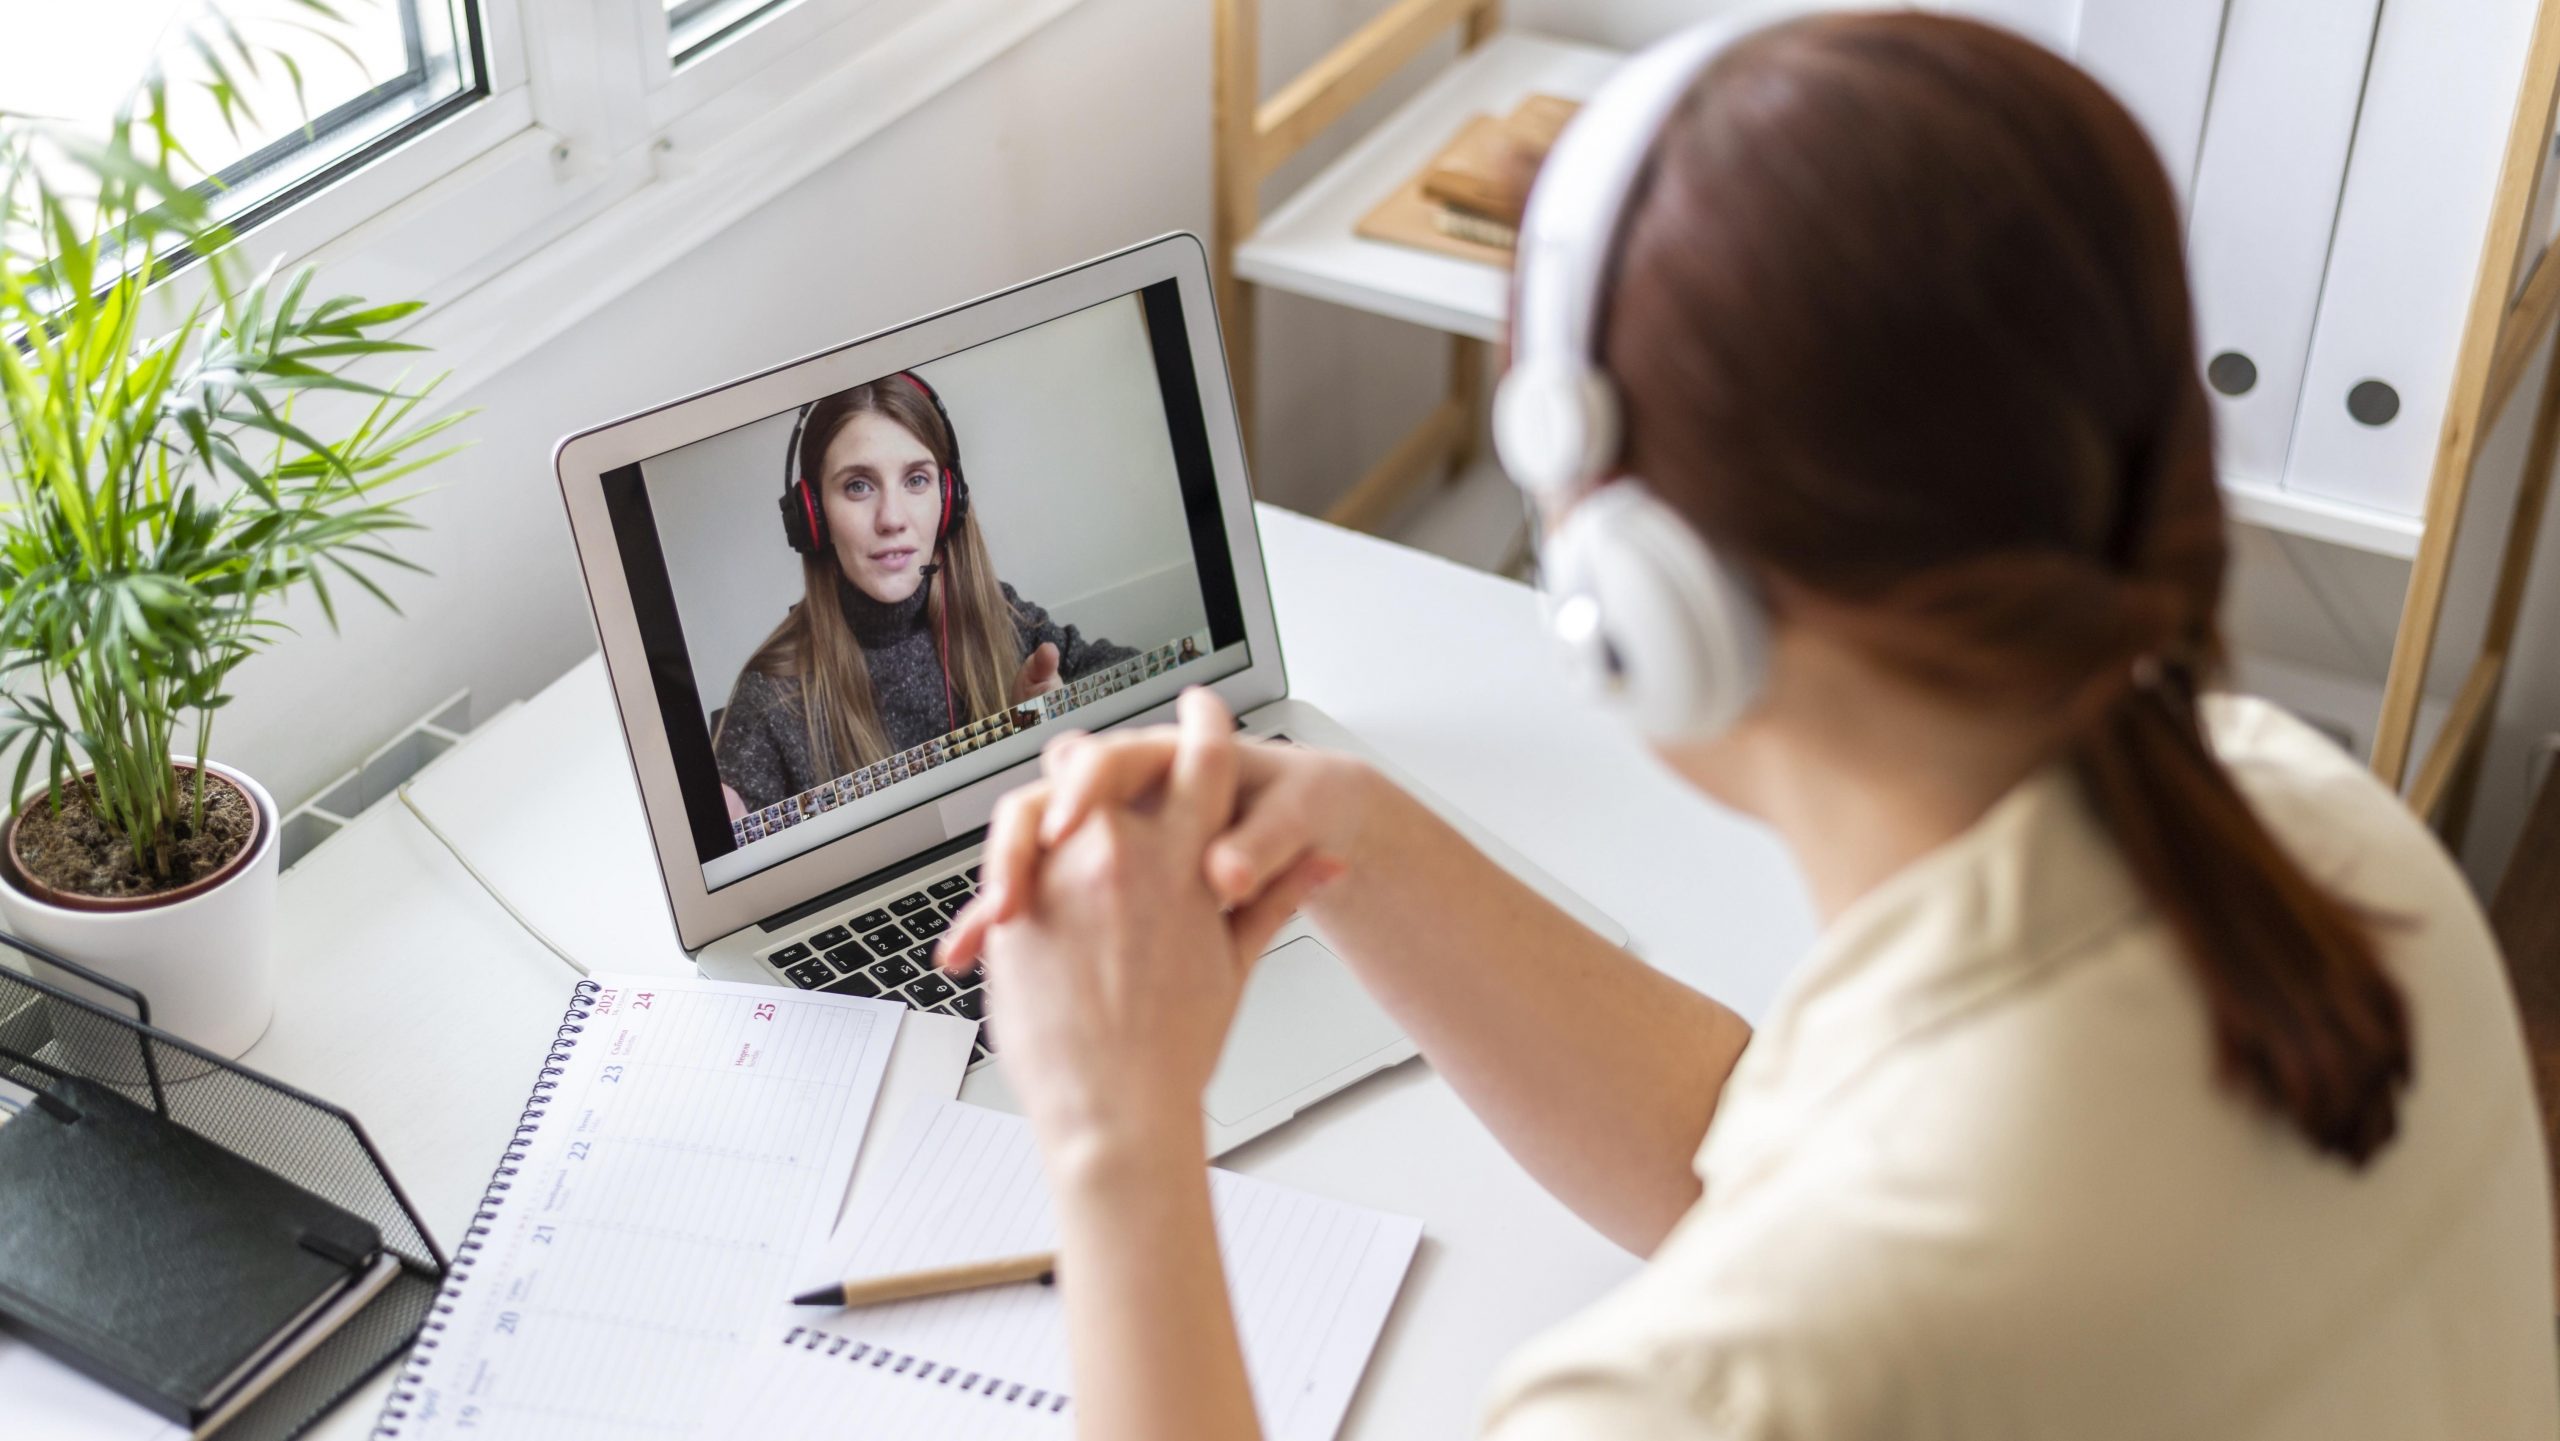 Foto de uma mulher em um escritório sentada de frente para um notebook, onde há outra mulher projetada na tela. As duas usam fones de ouvido e parecem estar em uma videochamada.